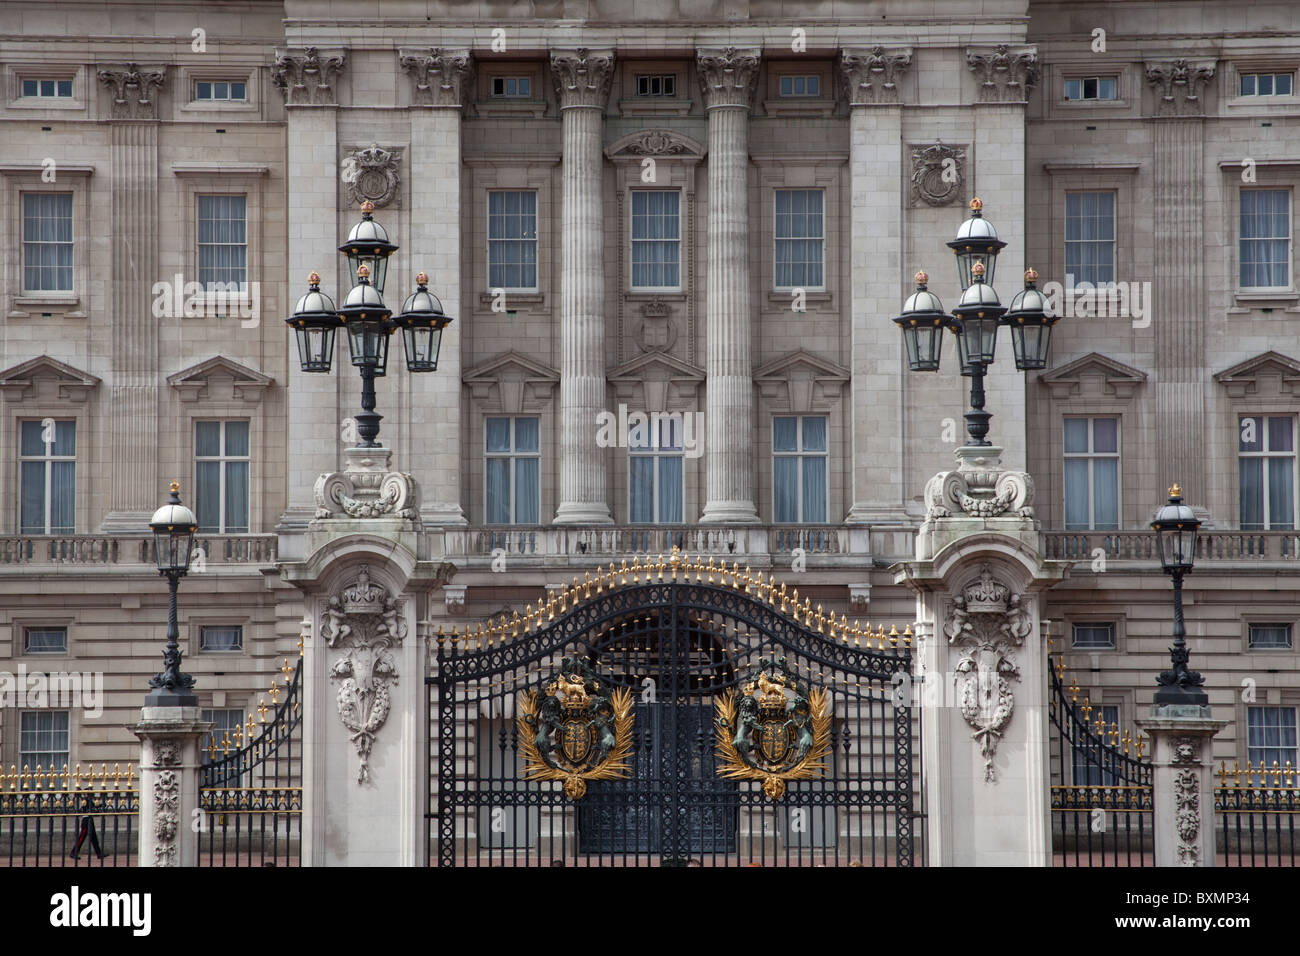 Grille d'entrée de Buckingham Palace à Londres Banque D'Images